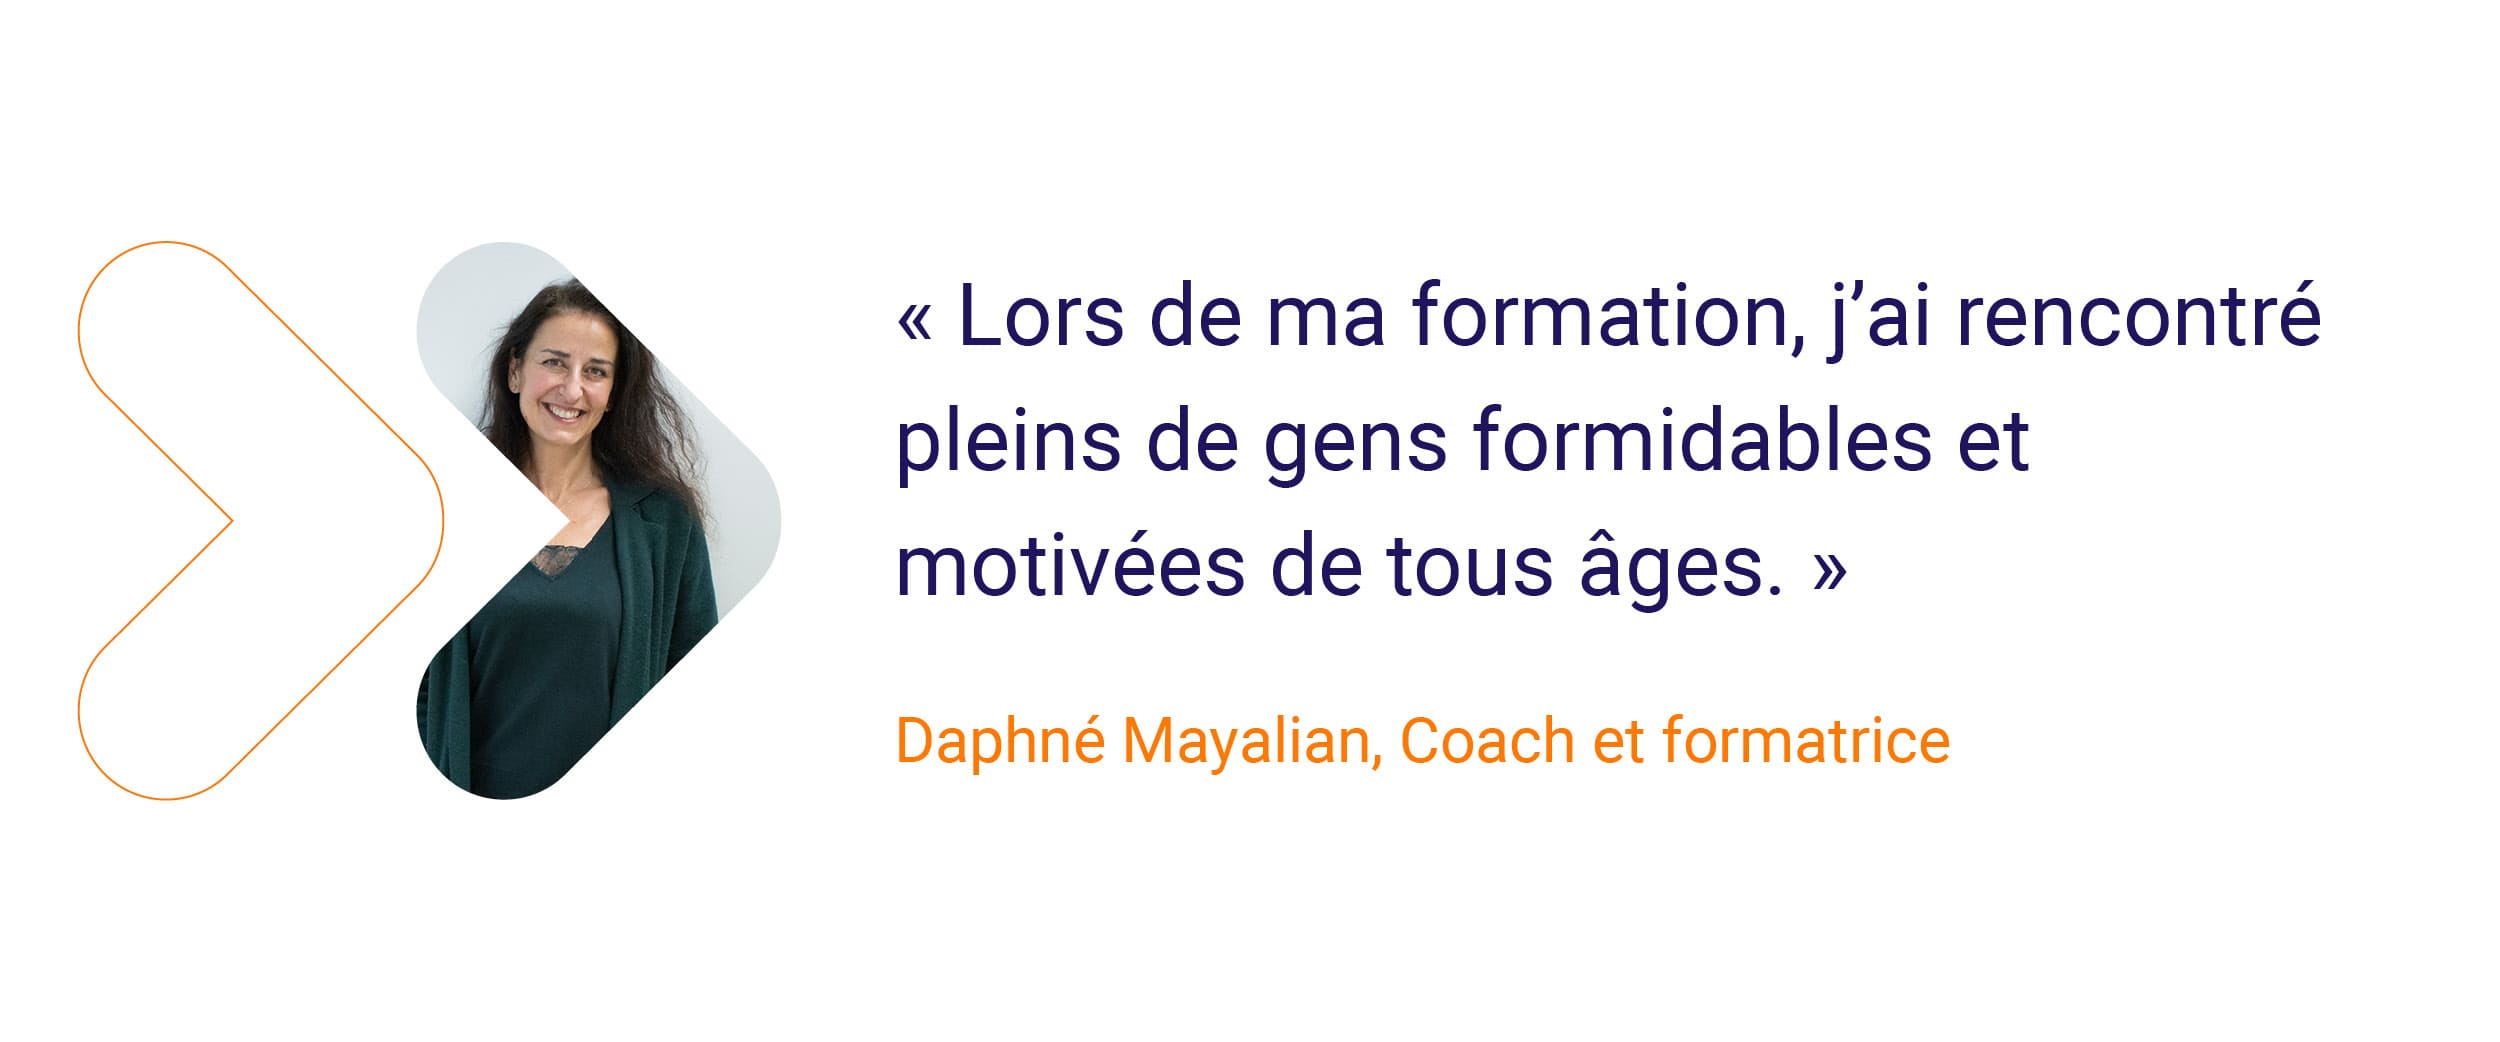 Daphné - « Lors de ma formation, j’ai rencontré plein de gens 
formidables et motivés de tous âges. »